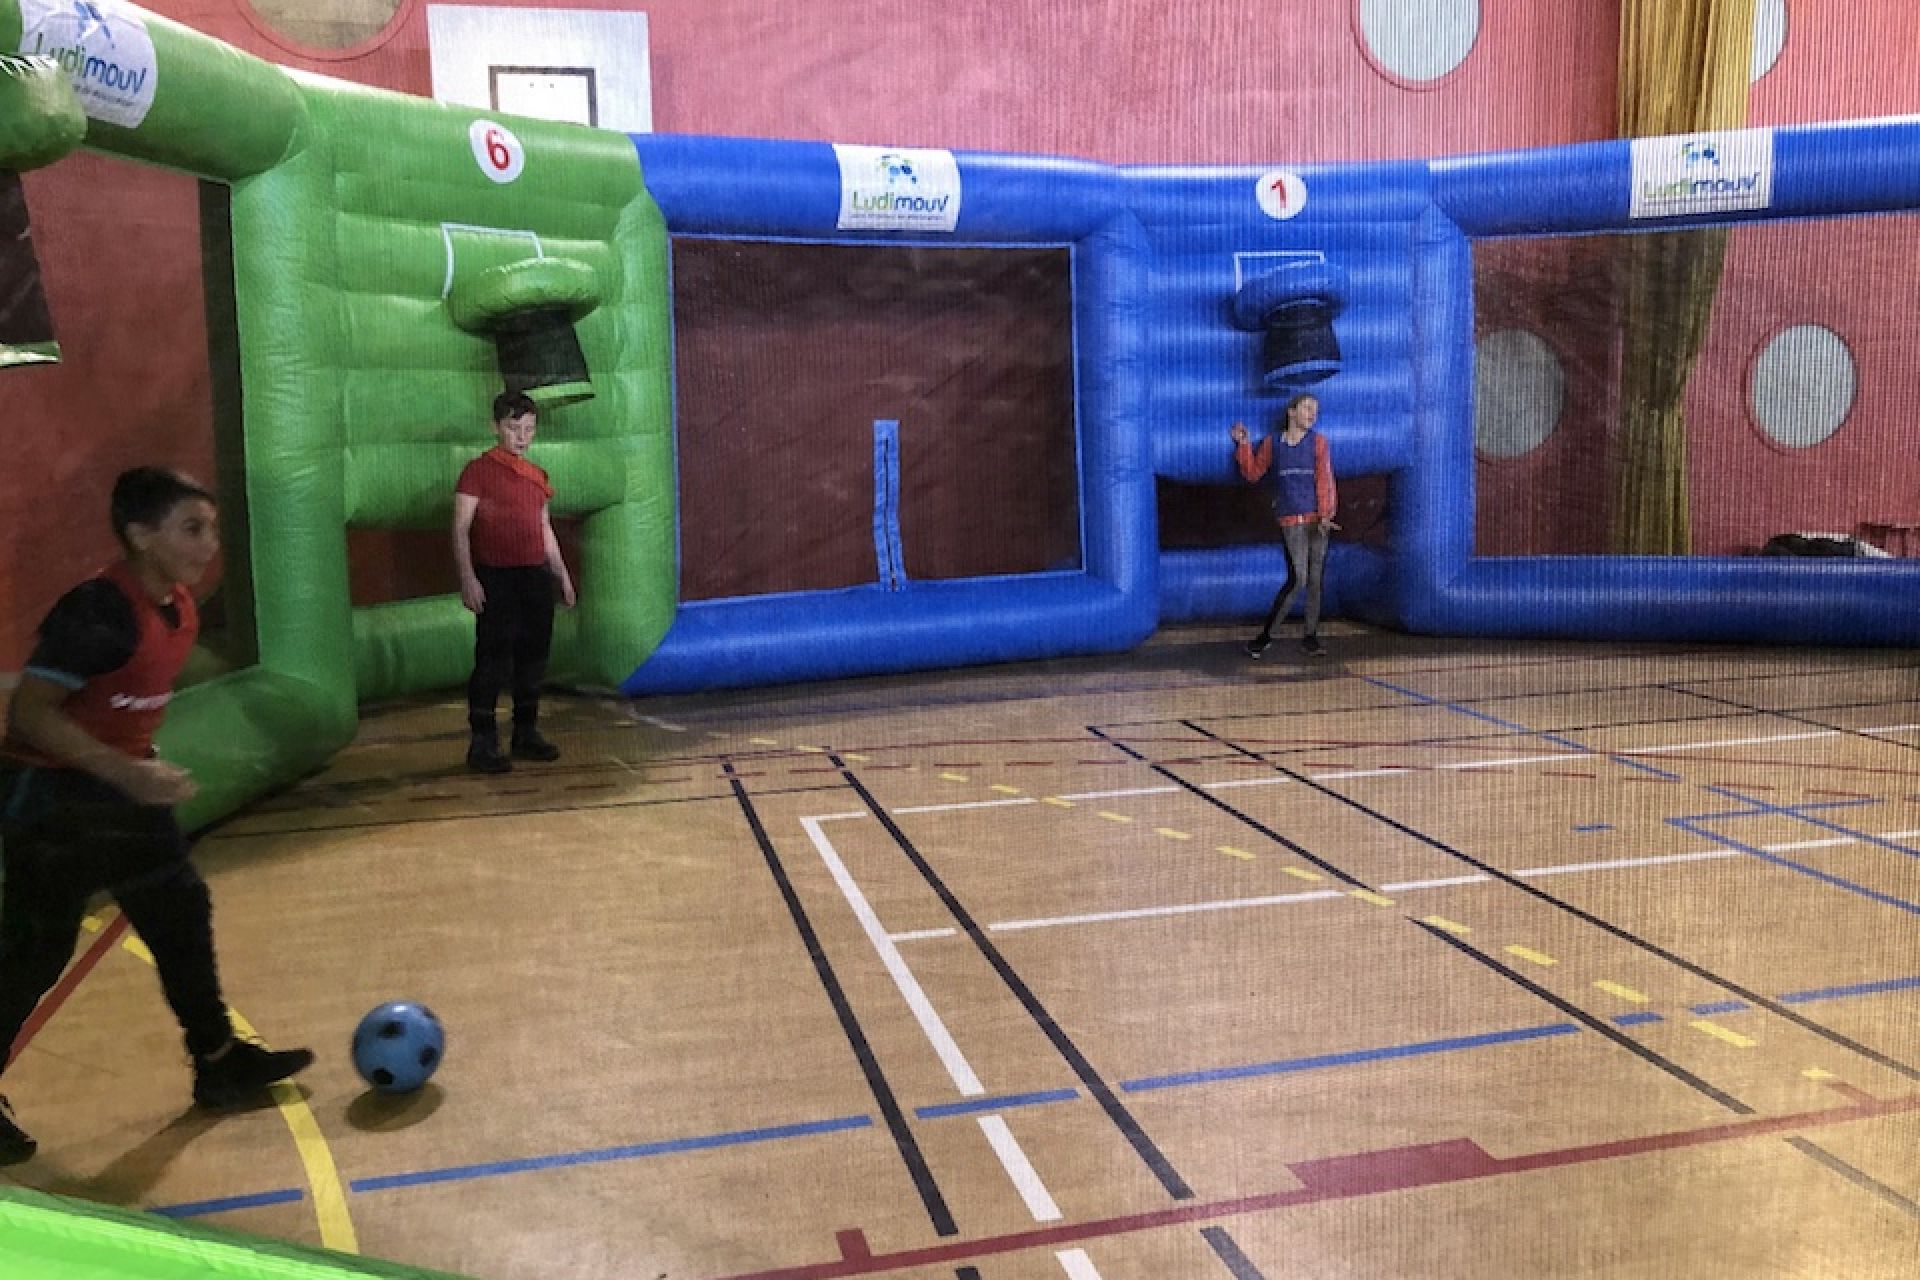 Équipes d'enfants s'affrontant au basket dans l'arène gonflable installée dans un gymnase.